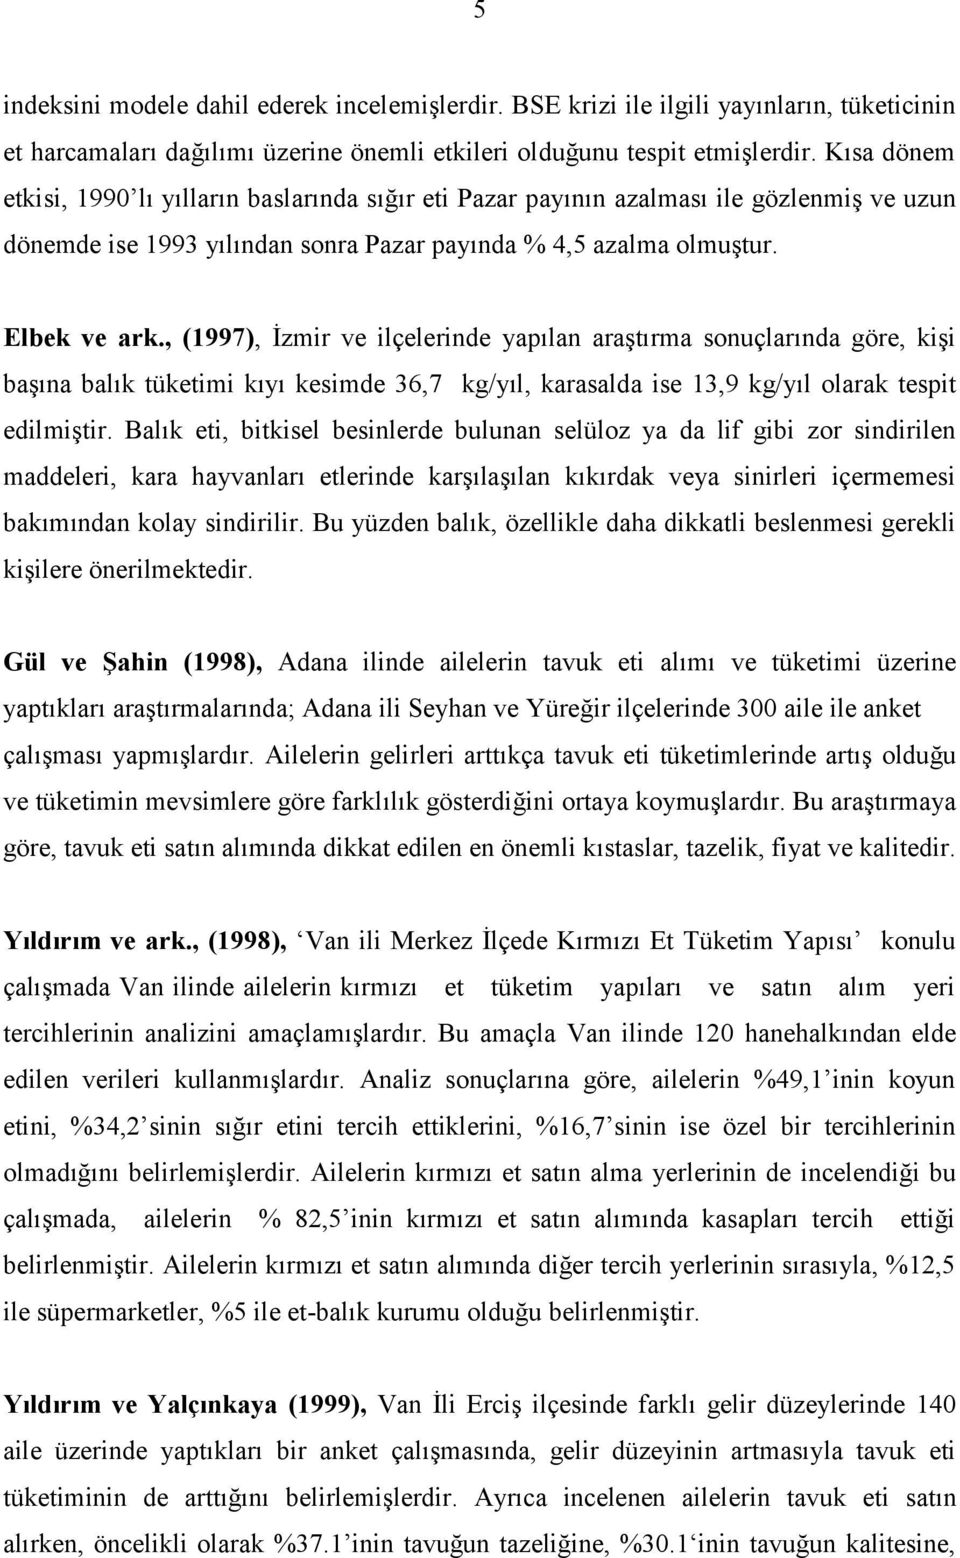 , (1997), İzmir ve ilçelerinde yapılan araştırma sonuçlarında göre, kişi başına balık tüketimi kıyı kesimde 36,7 kg/yıl, karasalda ise 13,9 kg/yıl olarak tespit edilmiştir.